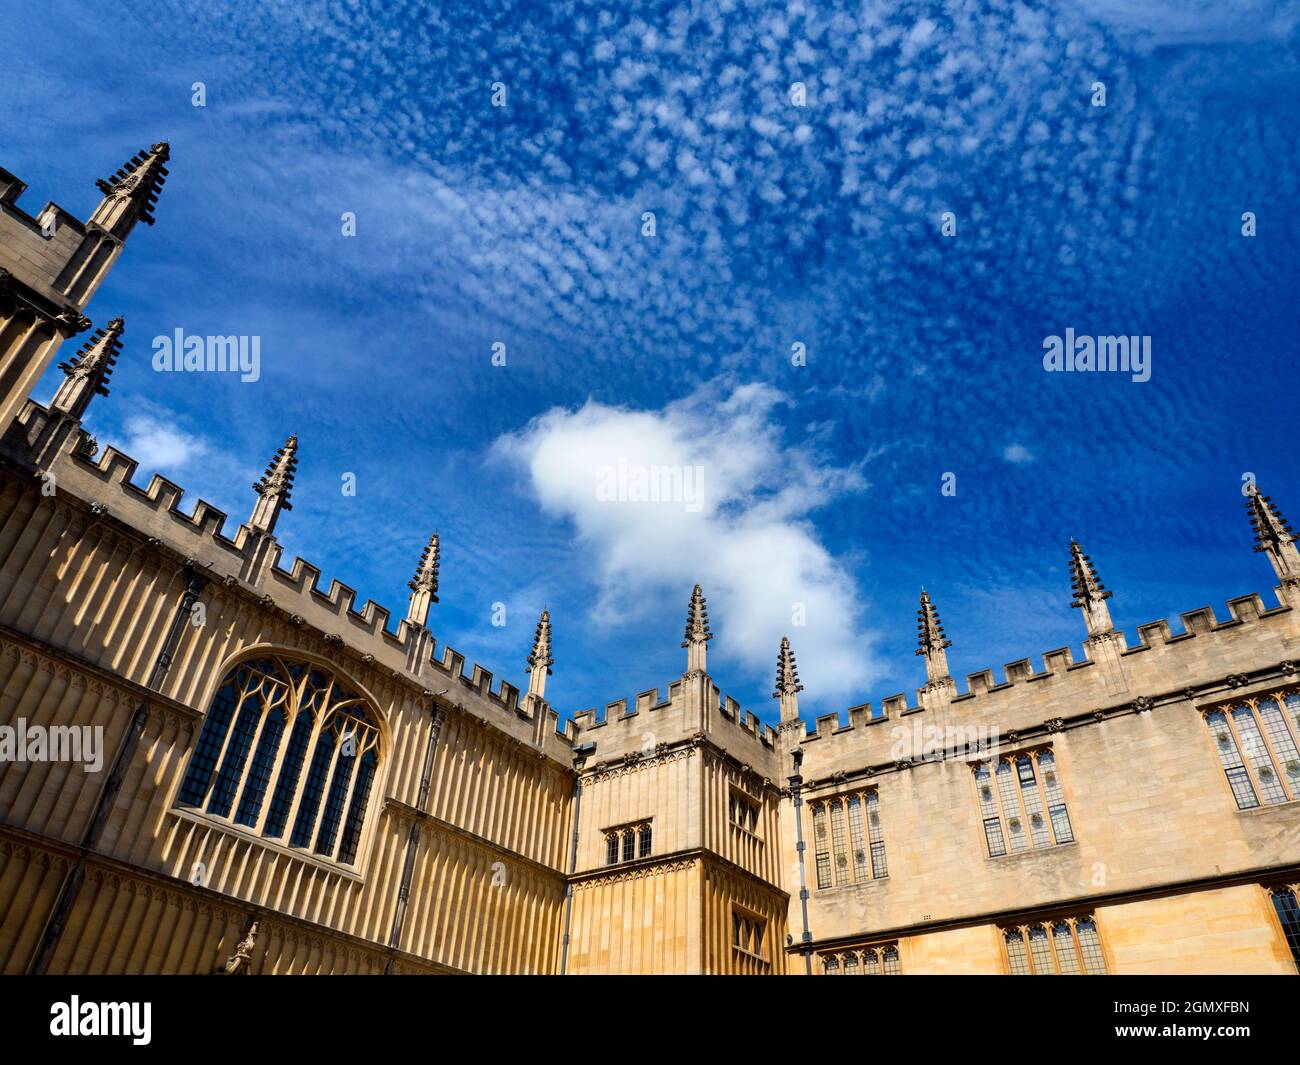 Oxford, Angleterre - 25 août 2017 Un magnifique ciel altocumulus de maquereau au-dessus de la célèbre bibliothèque Bodleian d'Oxford. La bibliothèque historique Bodleian est Banque D'Images